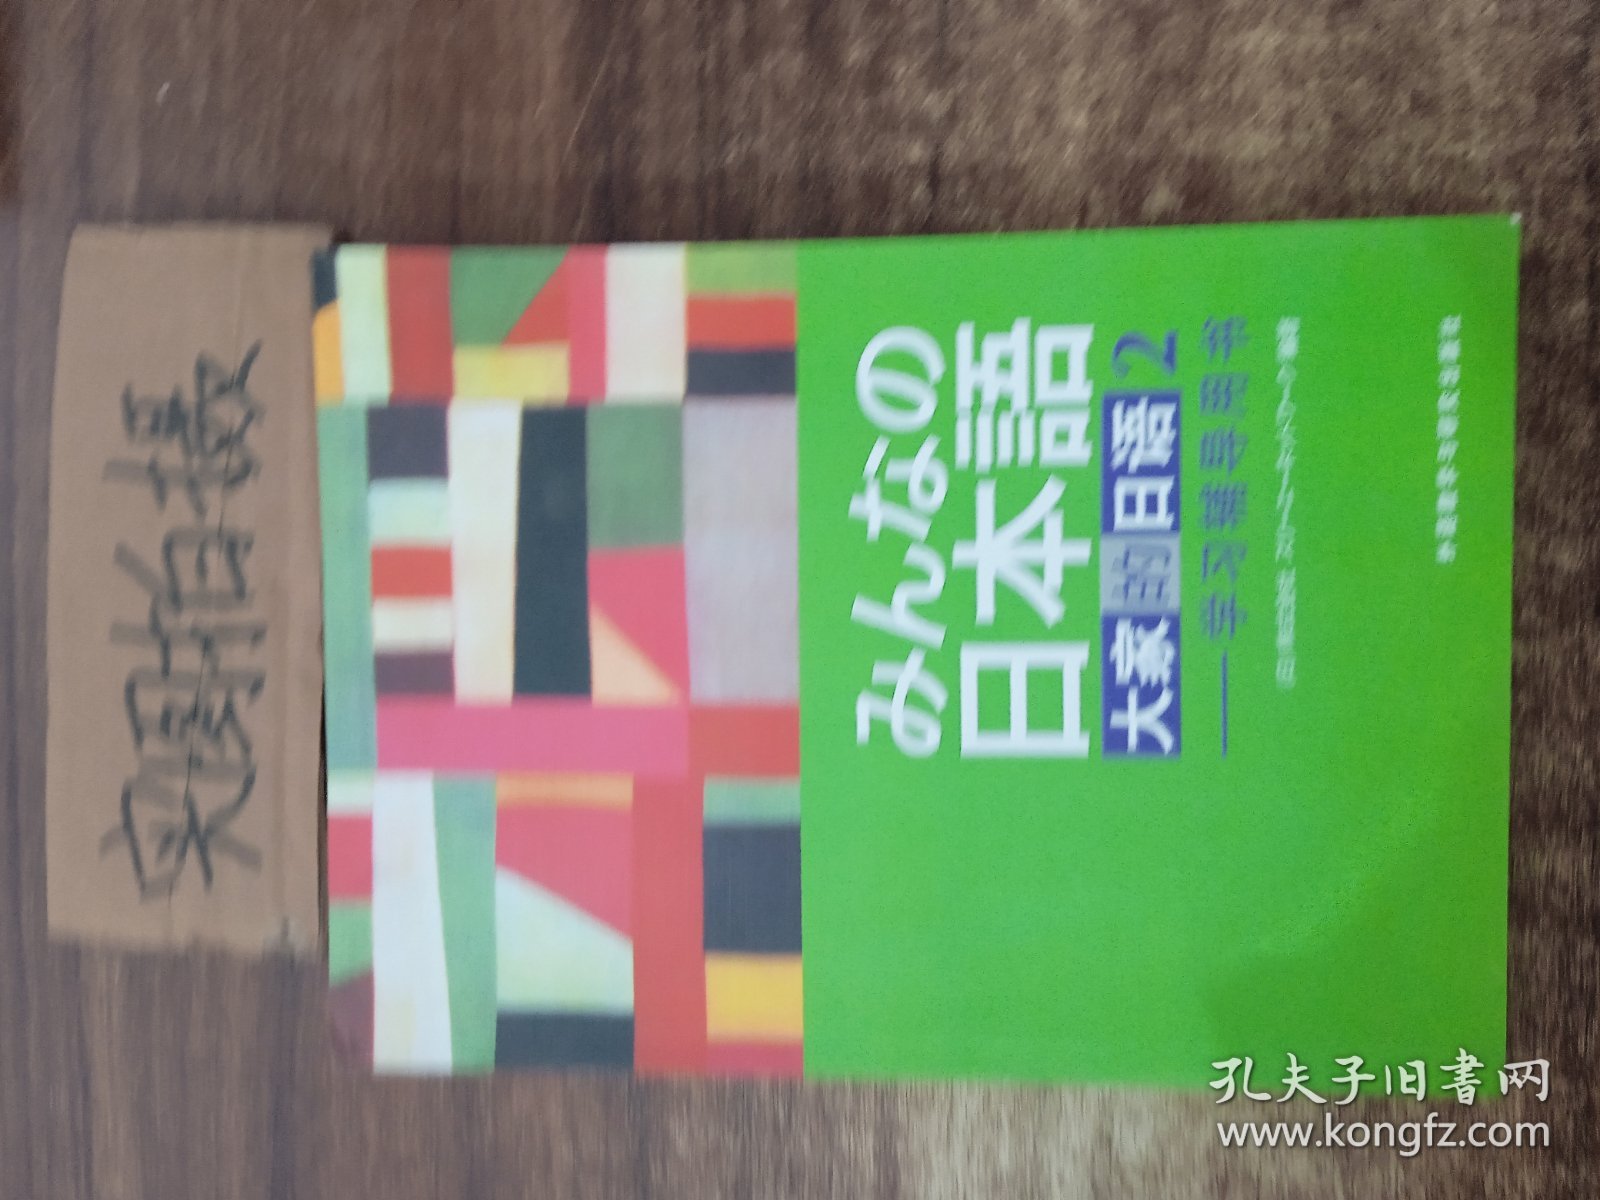 大家的日语(2)学习辅导用书。。